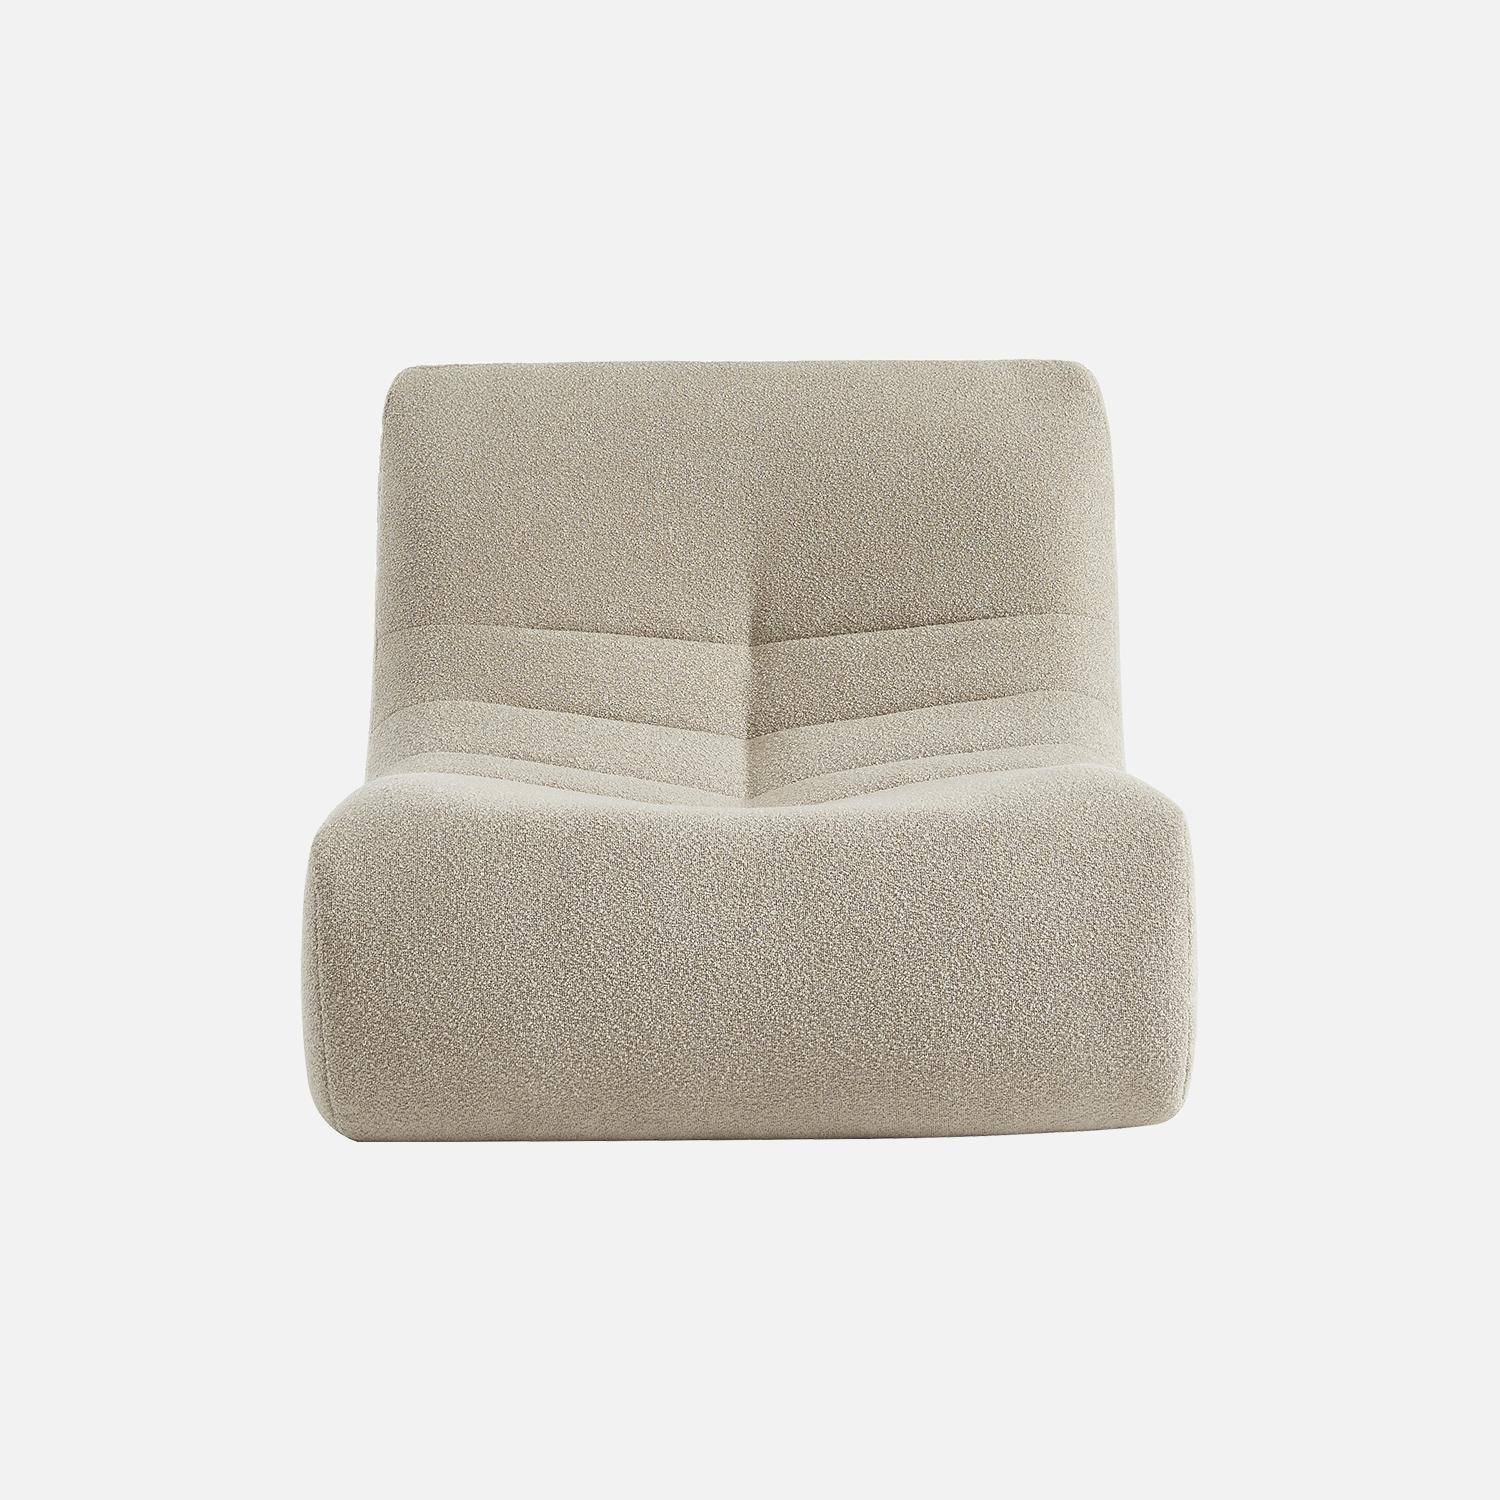 Fauteuil in beige boucléstof, eigentijdse stijl, 1 zitplaats,sweeek,Photo4